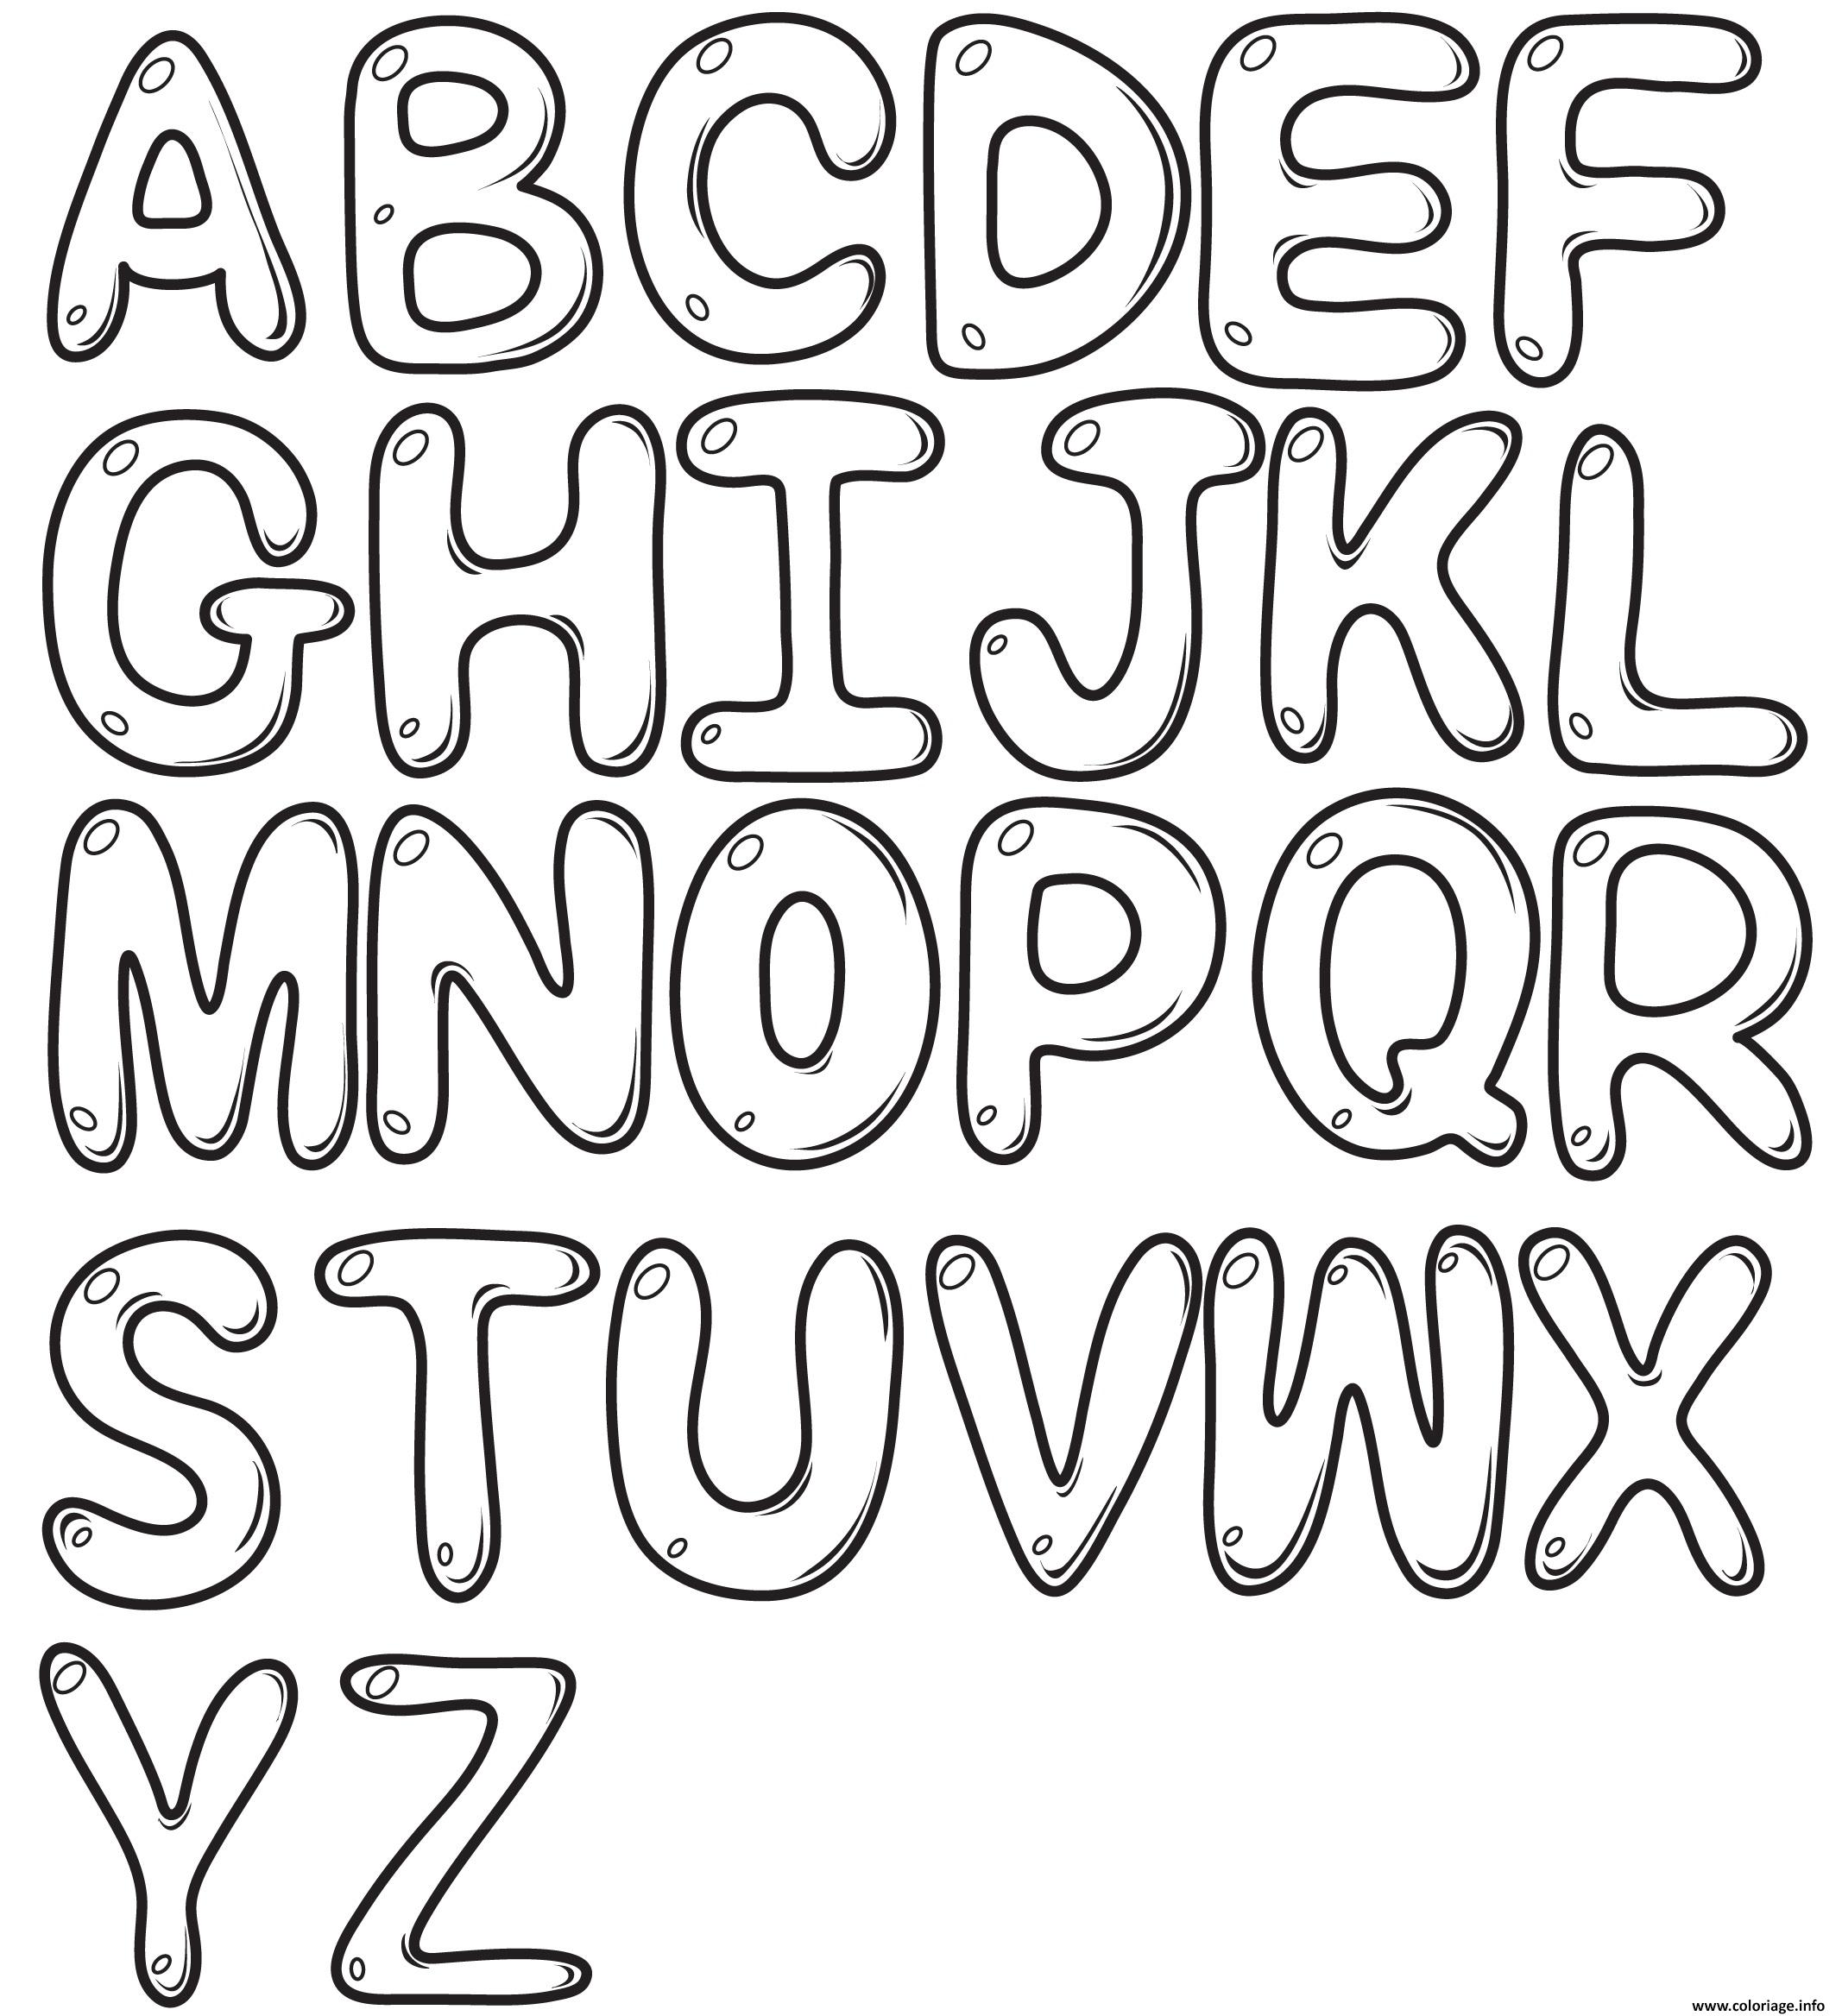 coloriage-bubble-letters-alphabet-az-jecolorie